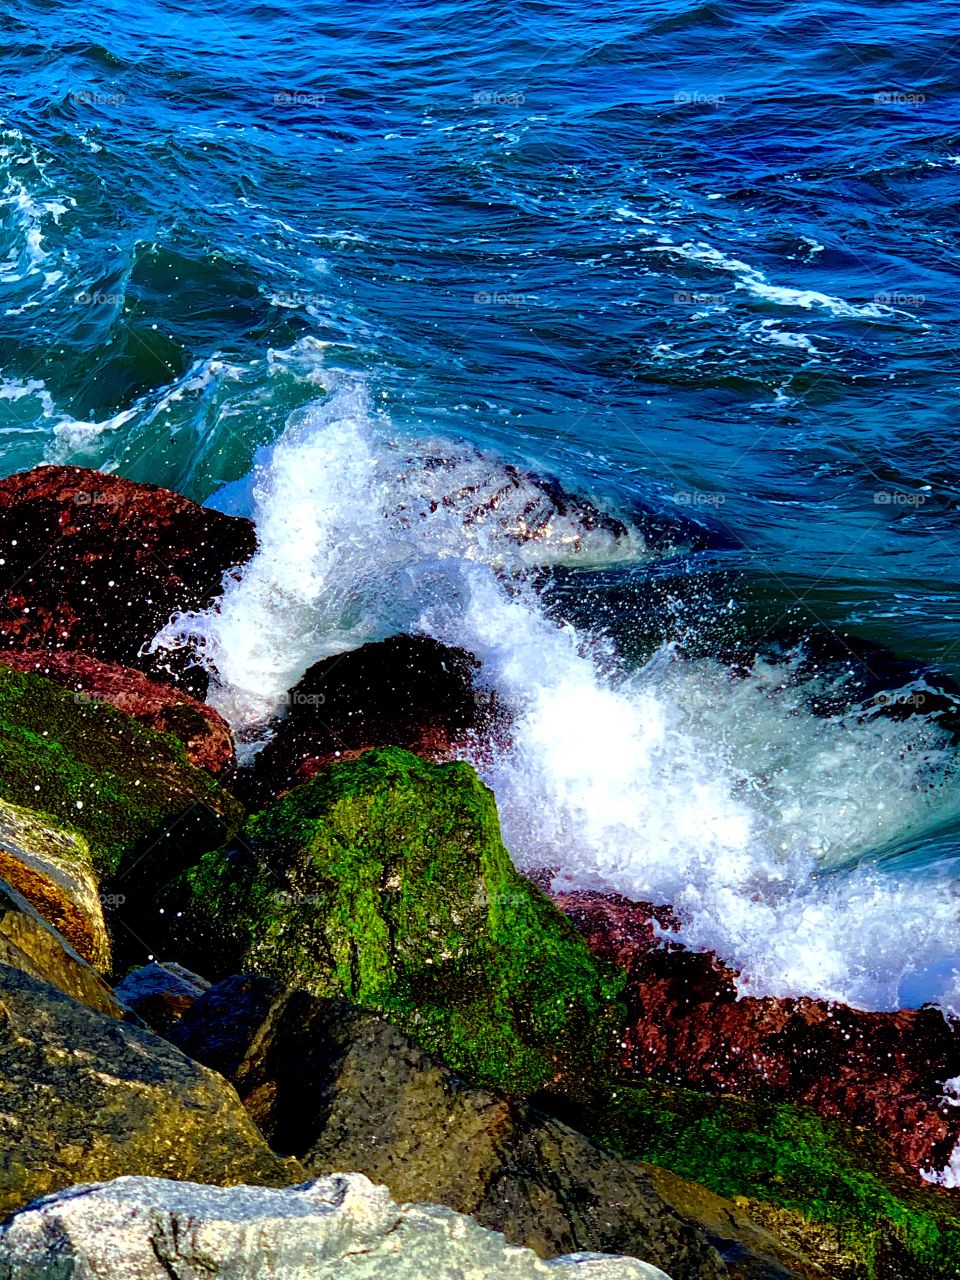 waves crashing on rocks on the shore